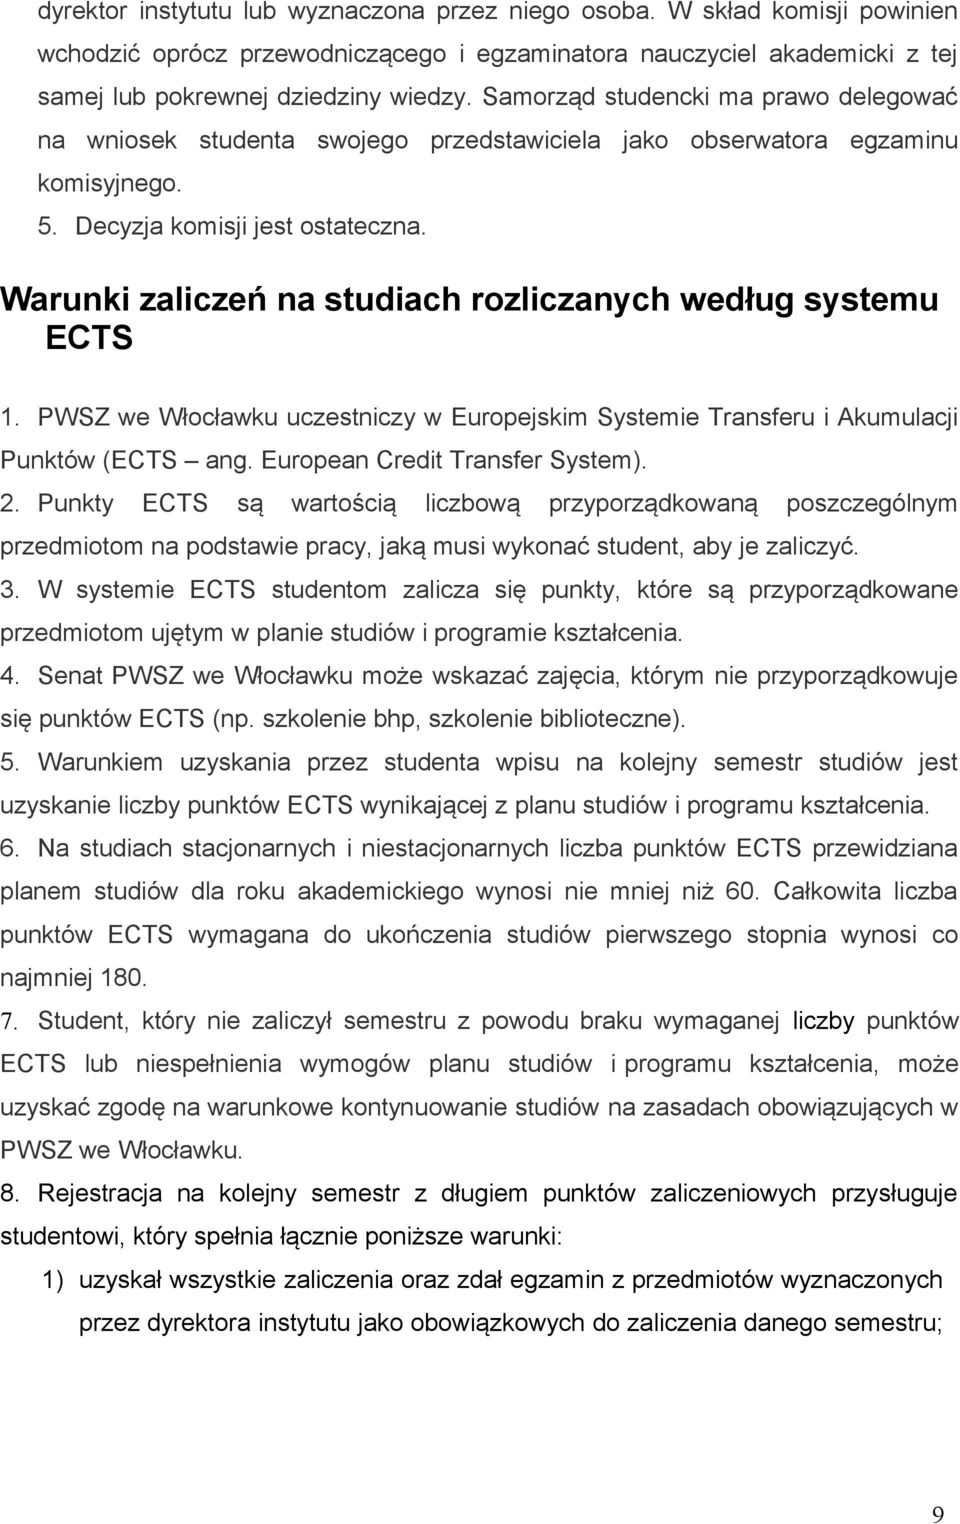 Warunki zaliczeń na studiach rozliczanych według systemu ECTS 1. PWSZ we Włocławku uczestniczy w Europejskim Systemie Transferu i Akumulacji Punktów (ECTS ang. European Credit Transfer System). 2.